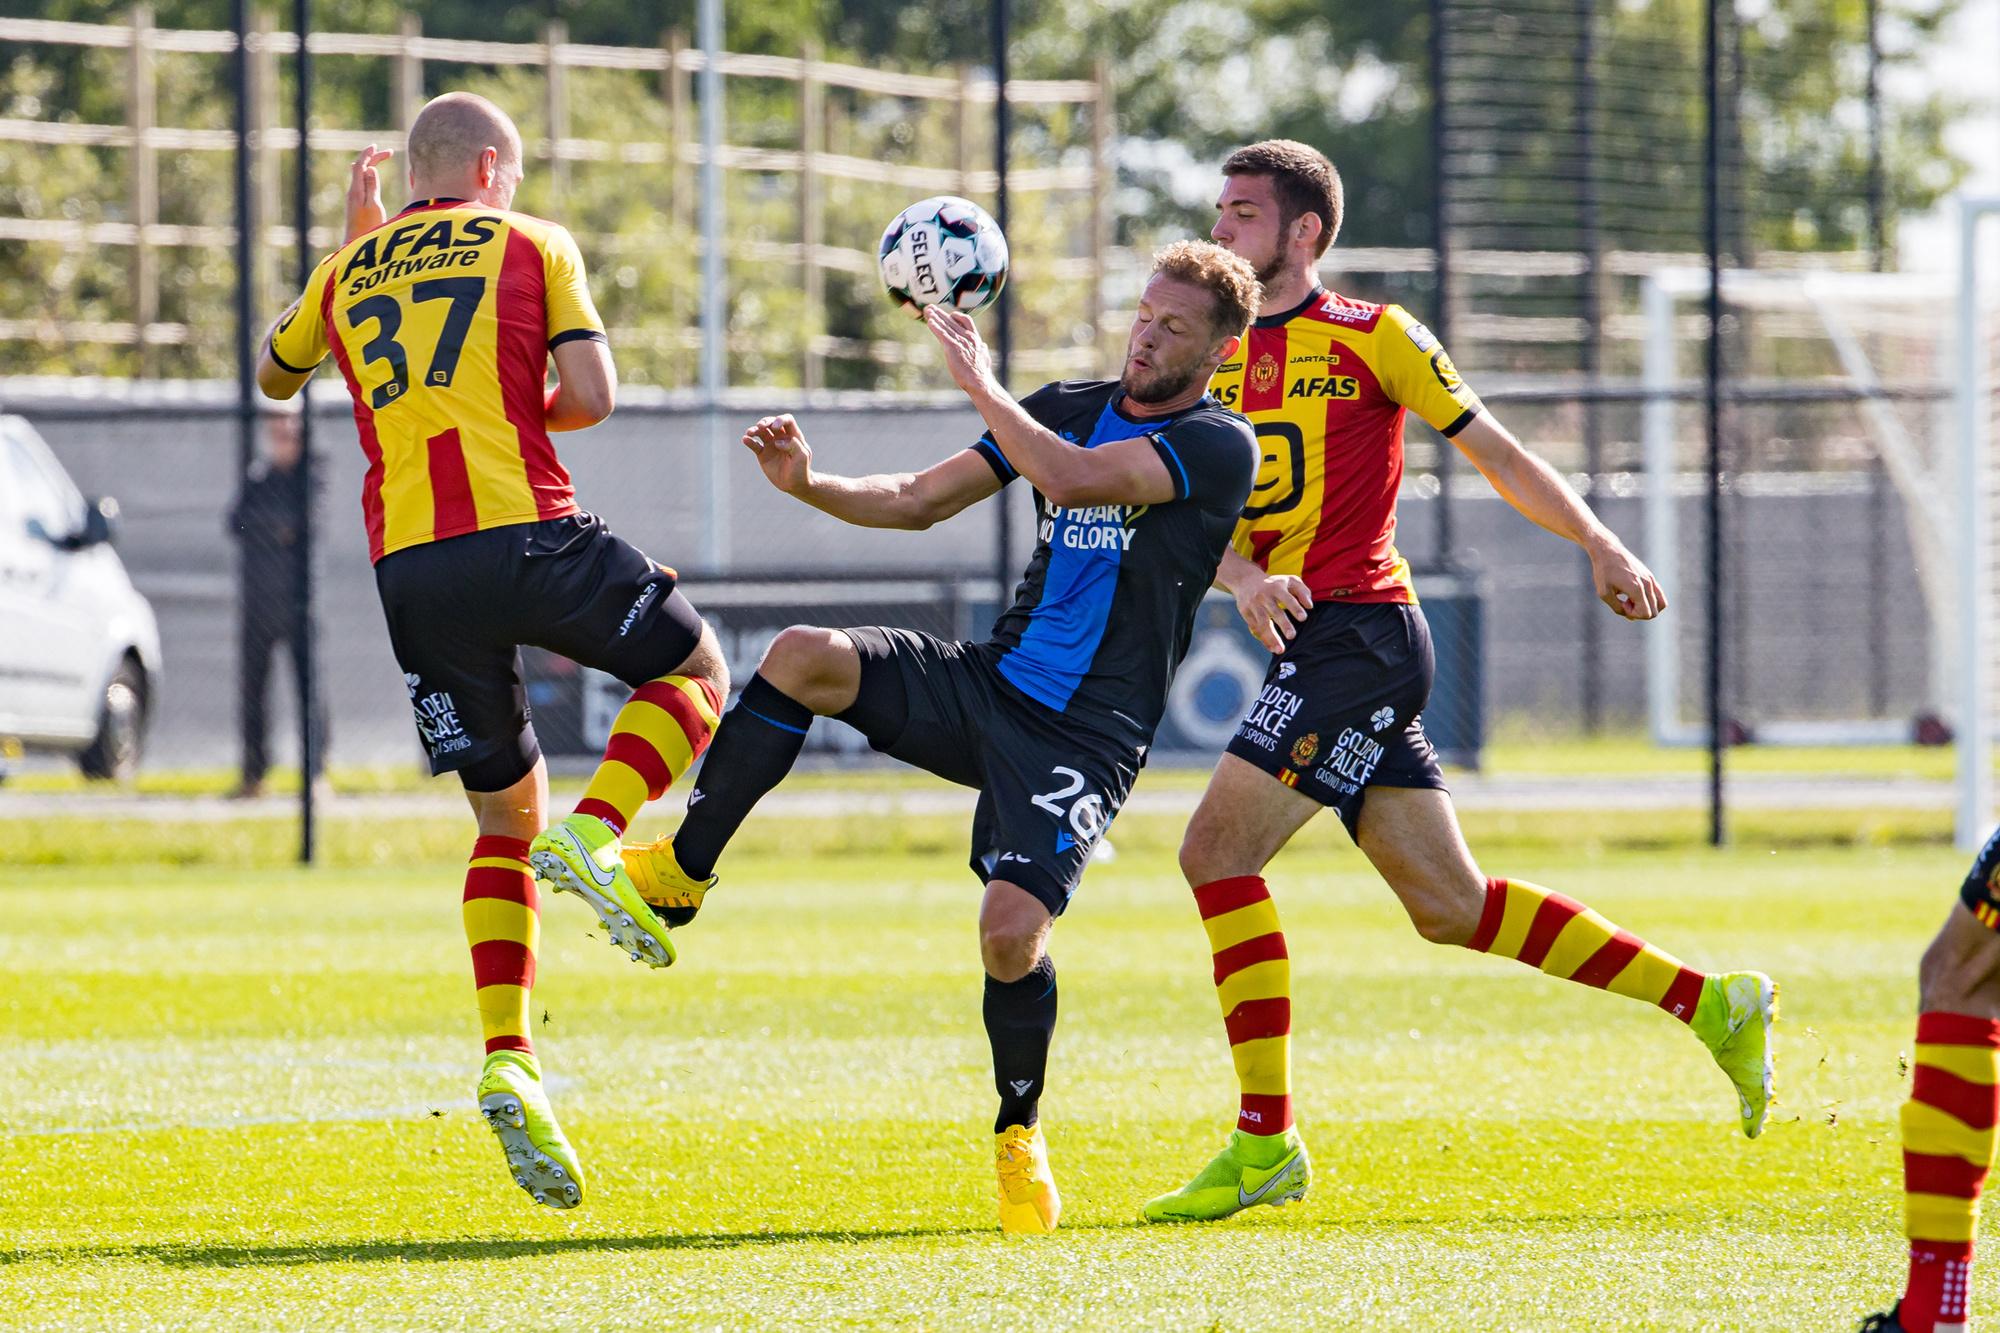 De voorbereiding van KV Mechelen liep niet al te vlot met enkele serieuze nederlagen.